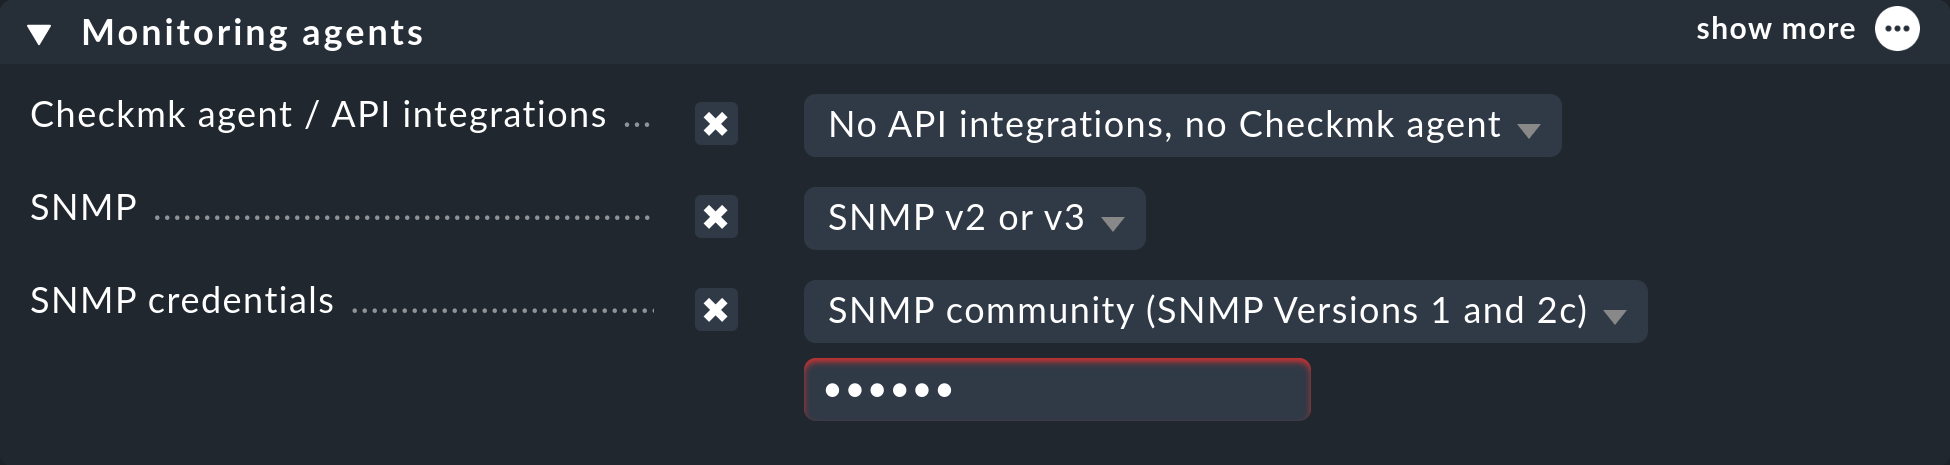 Aufnahme eines Hosts ins Monitoring per SNMP.